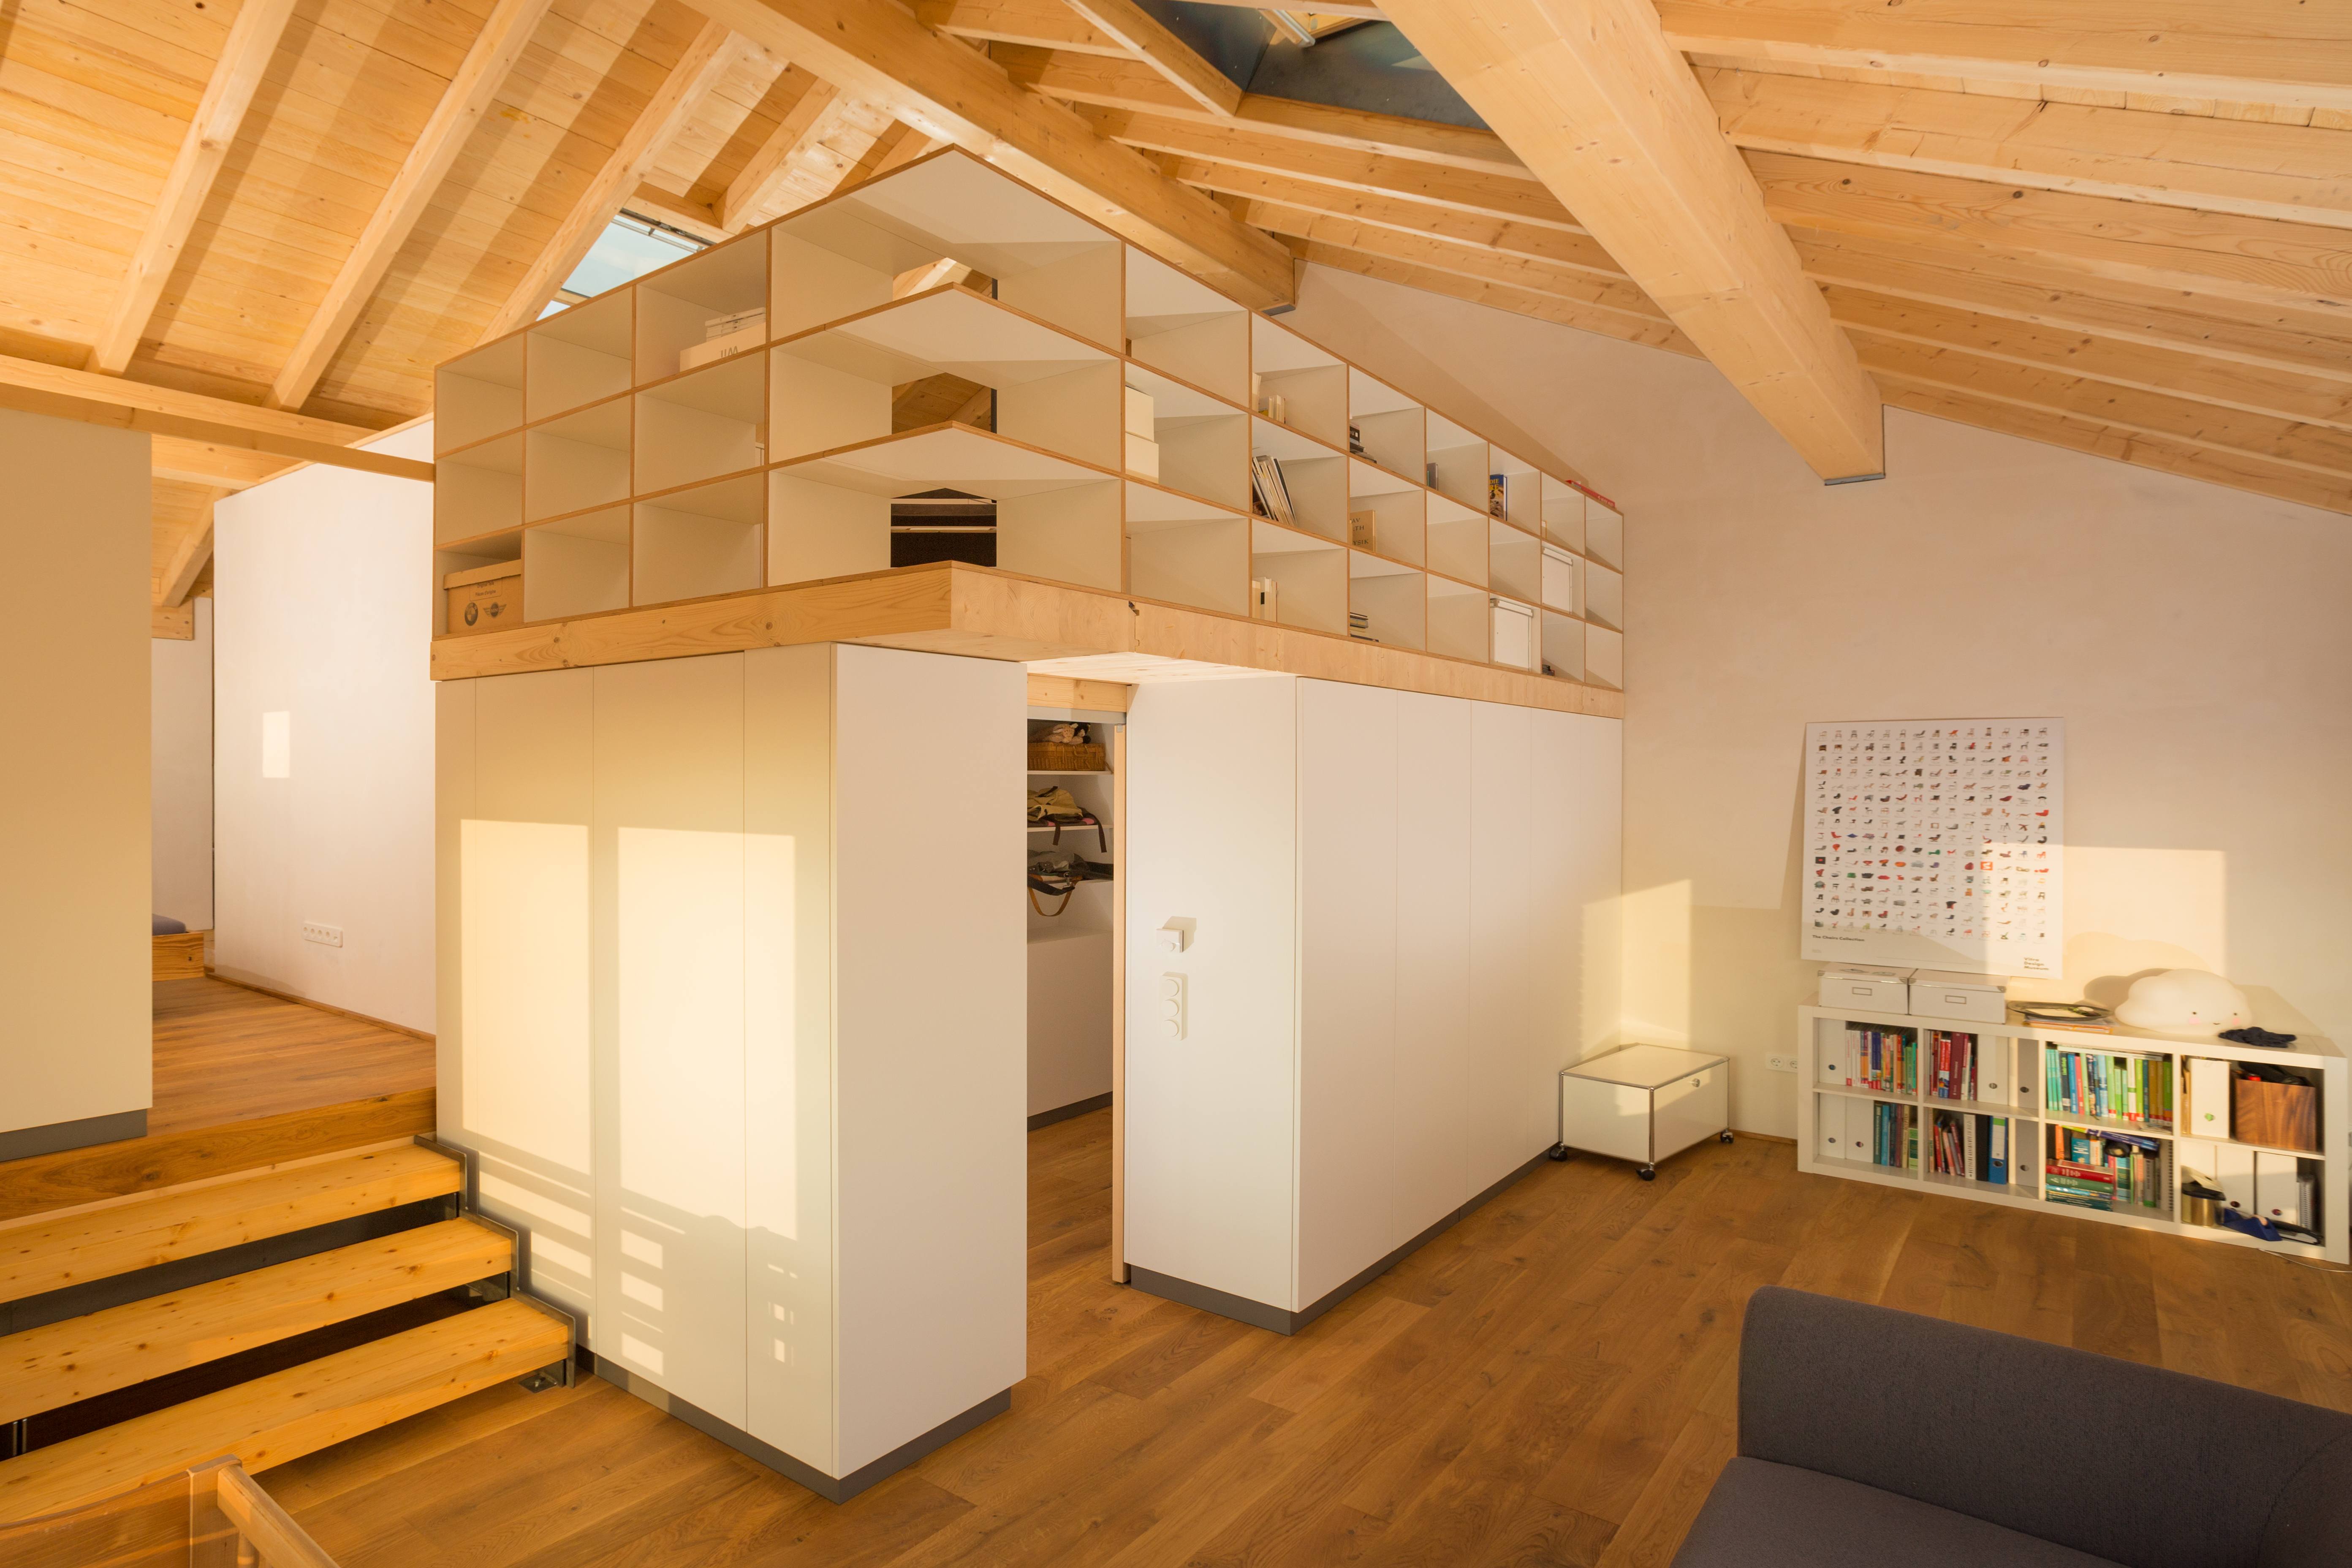 Holzhaus Sinzheim: Ein Zuhause aus Holz in Split-Level-Bauweise / Bildquelle: uvw-fotografie